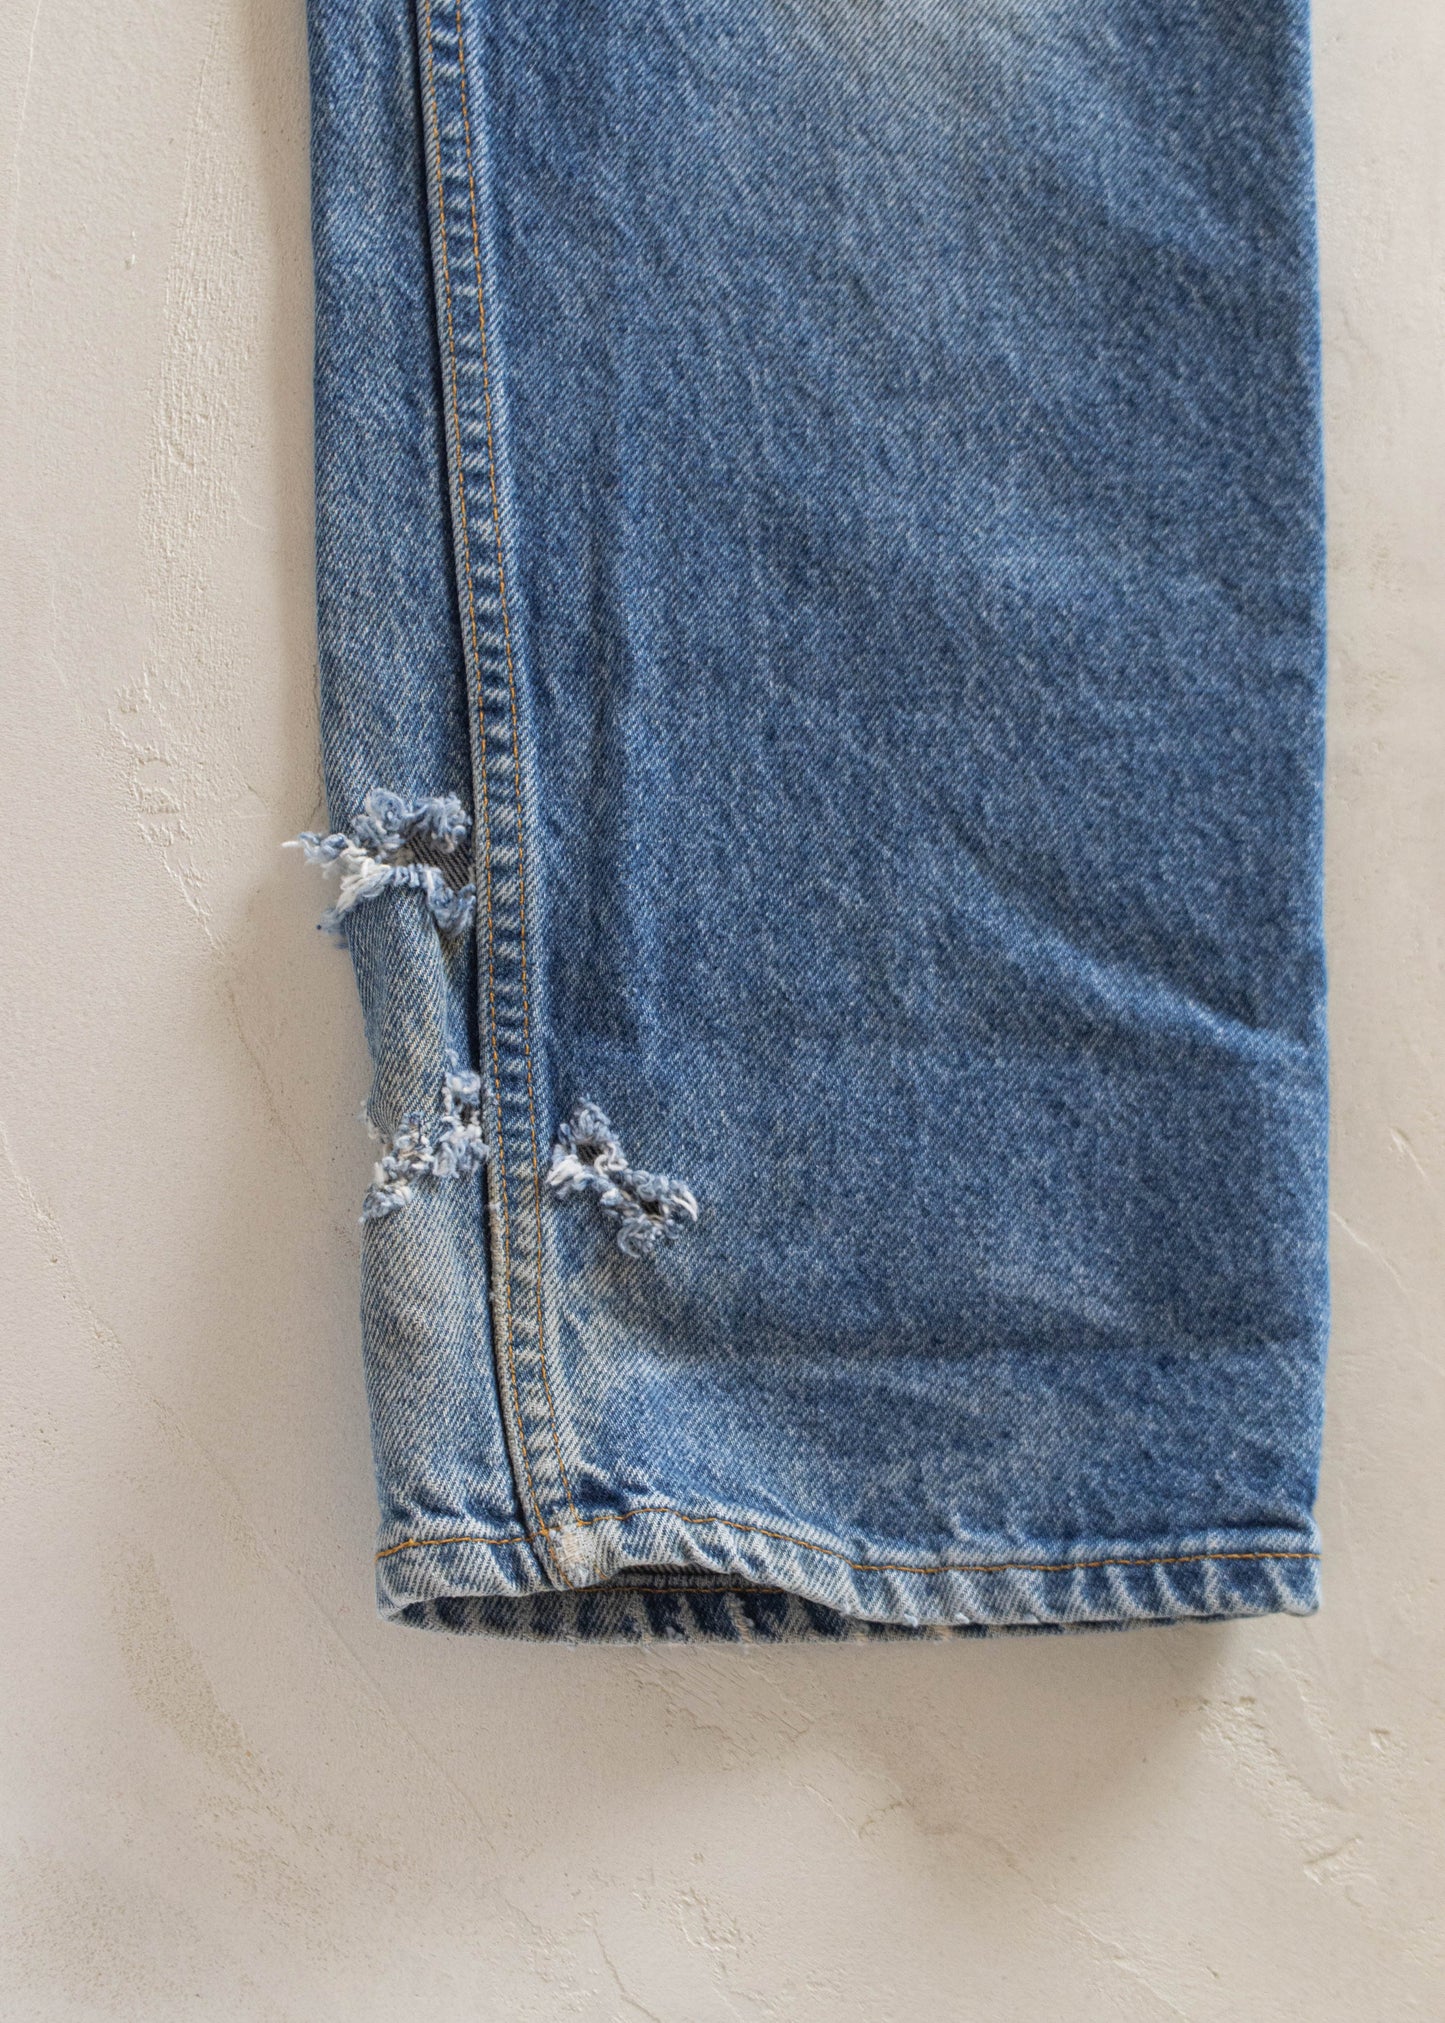 1980s Levi's 517 Midwash Jeans Size Women's 31 Men's 33